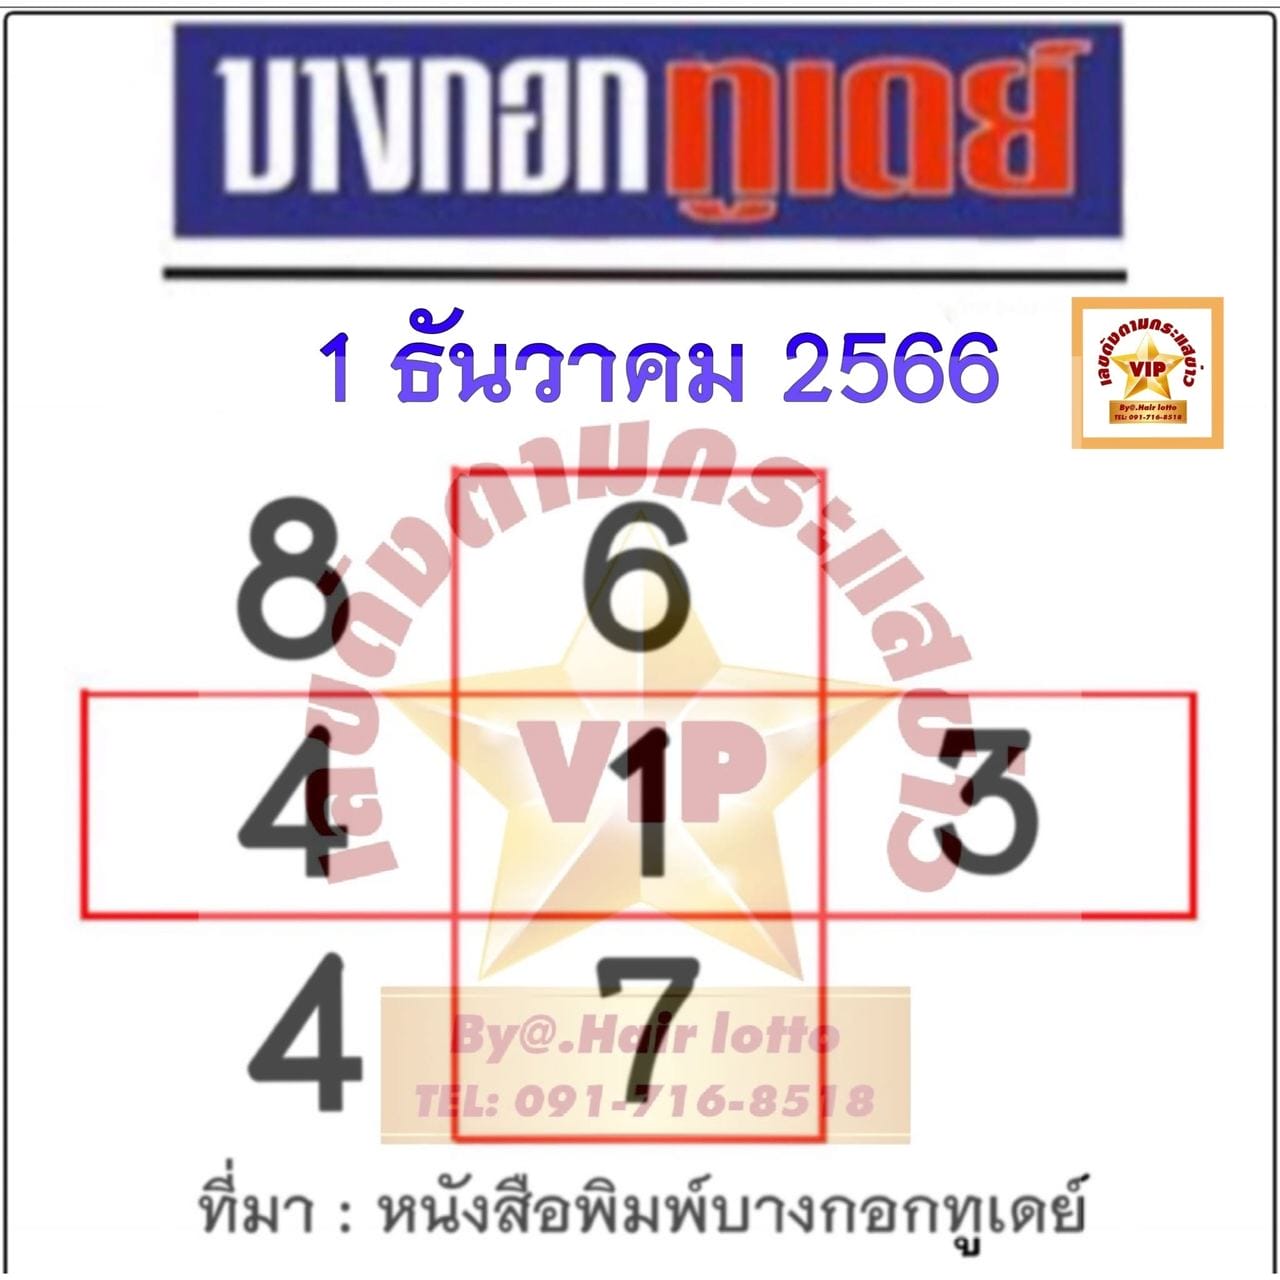 บางกอกทูเดย์ 1 12 66-"Bangkok Today 1 12 66"